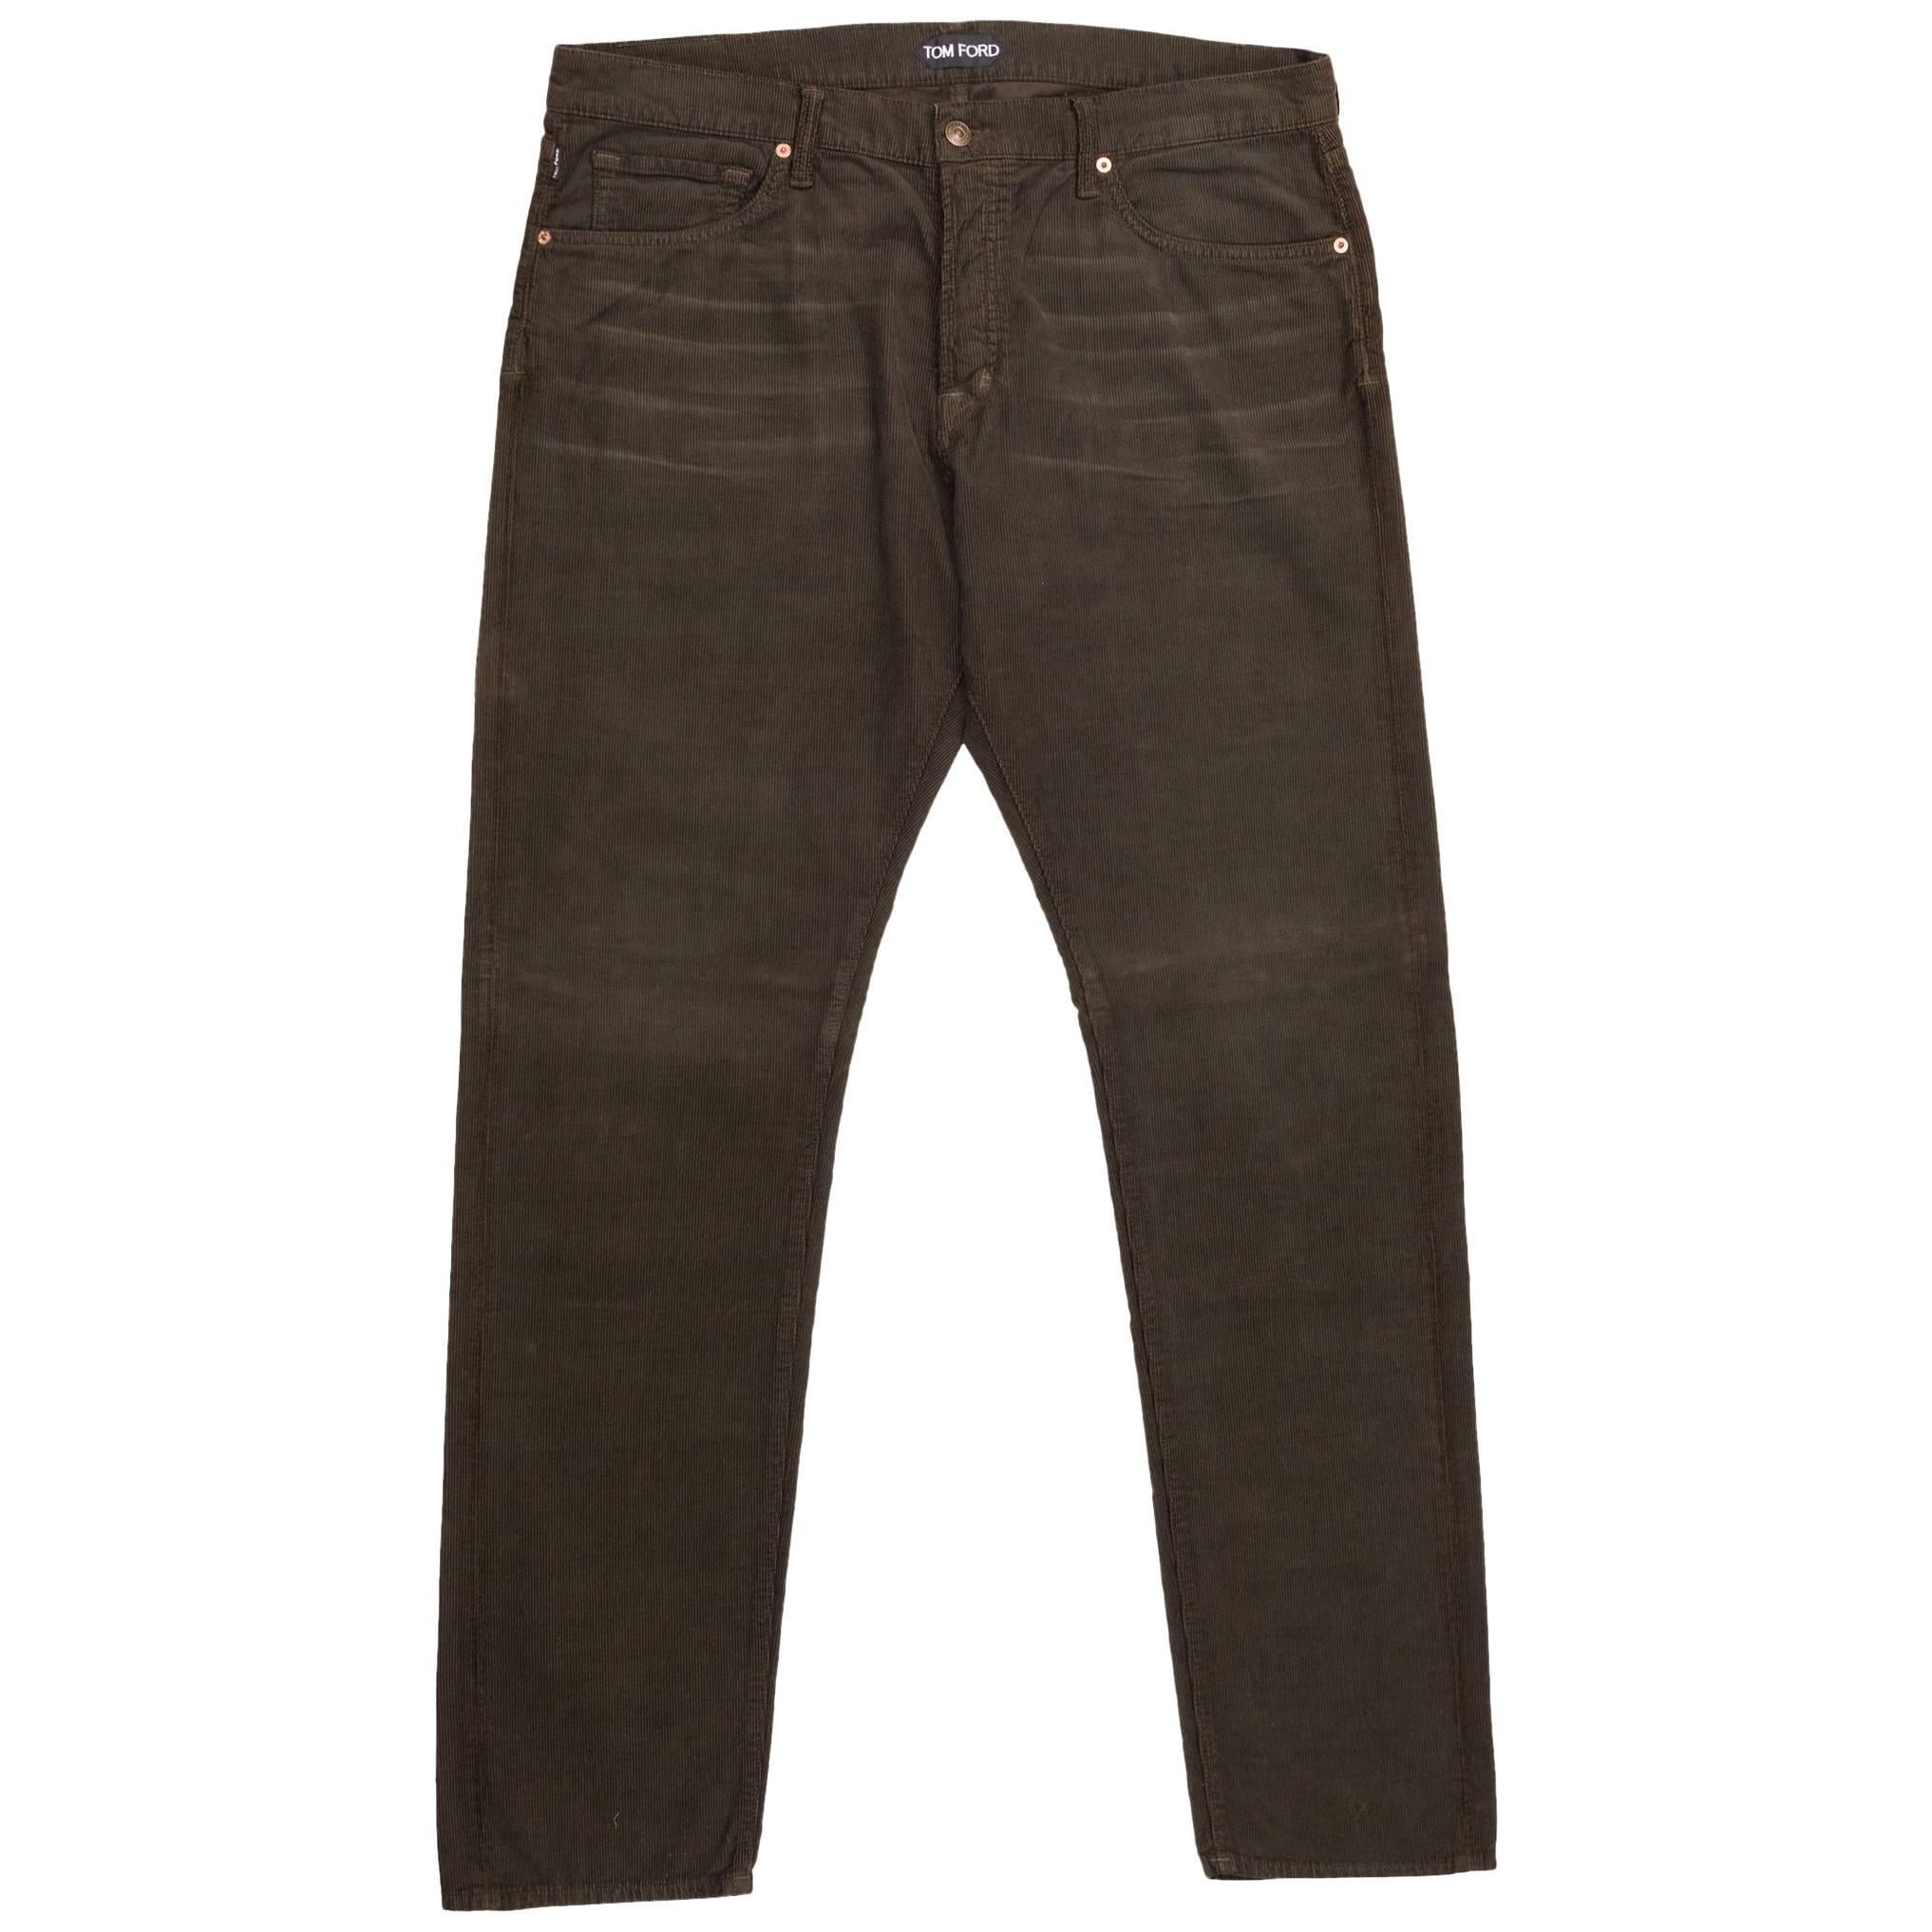 Tom Ford Denim Jeans Brown Wash Size 38 Regular Fit Model For Sale